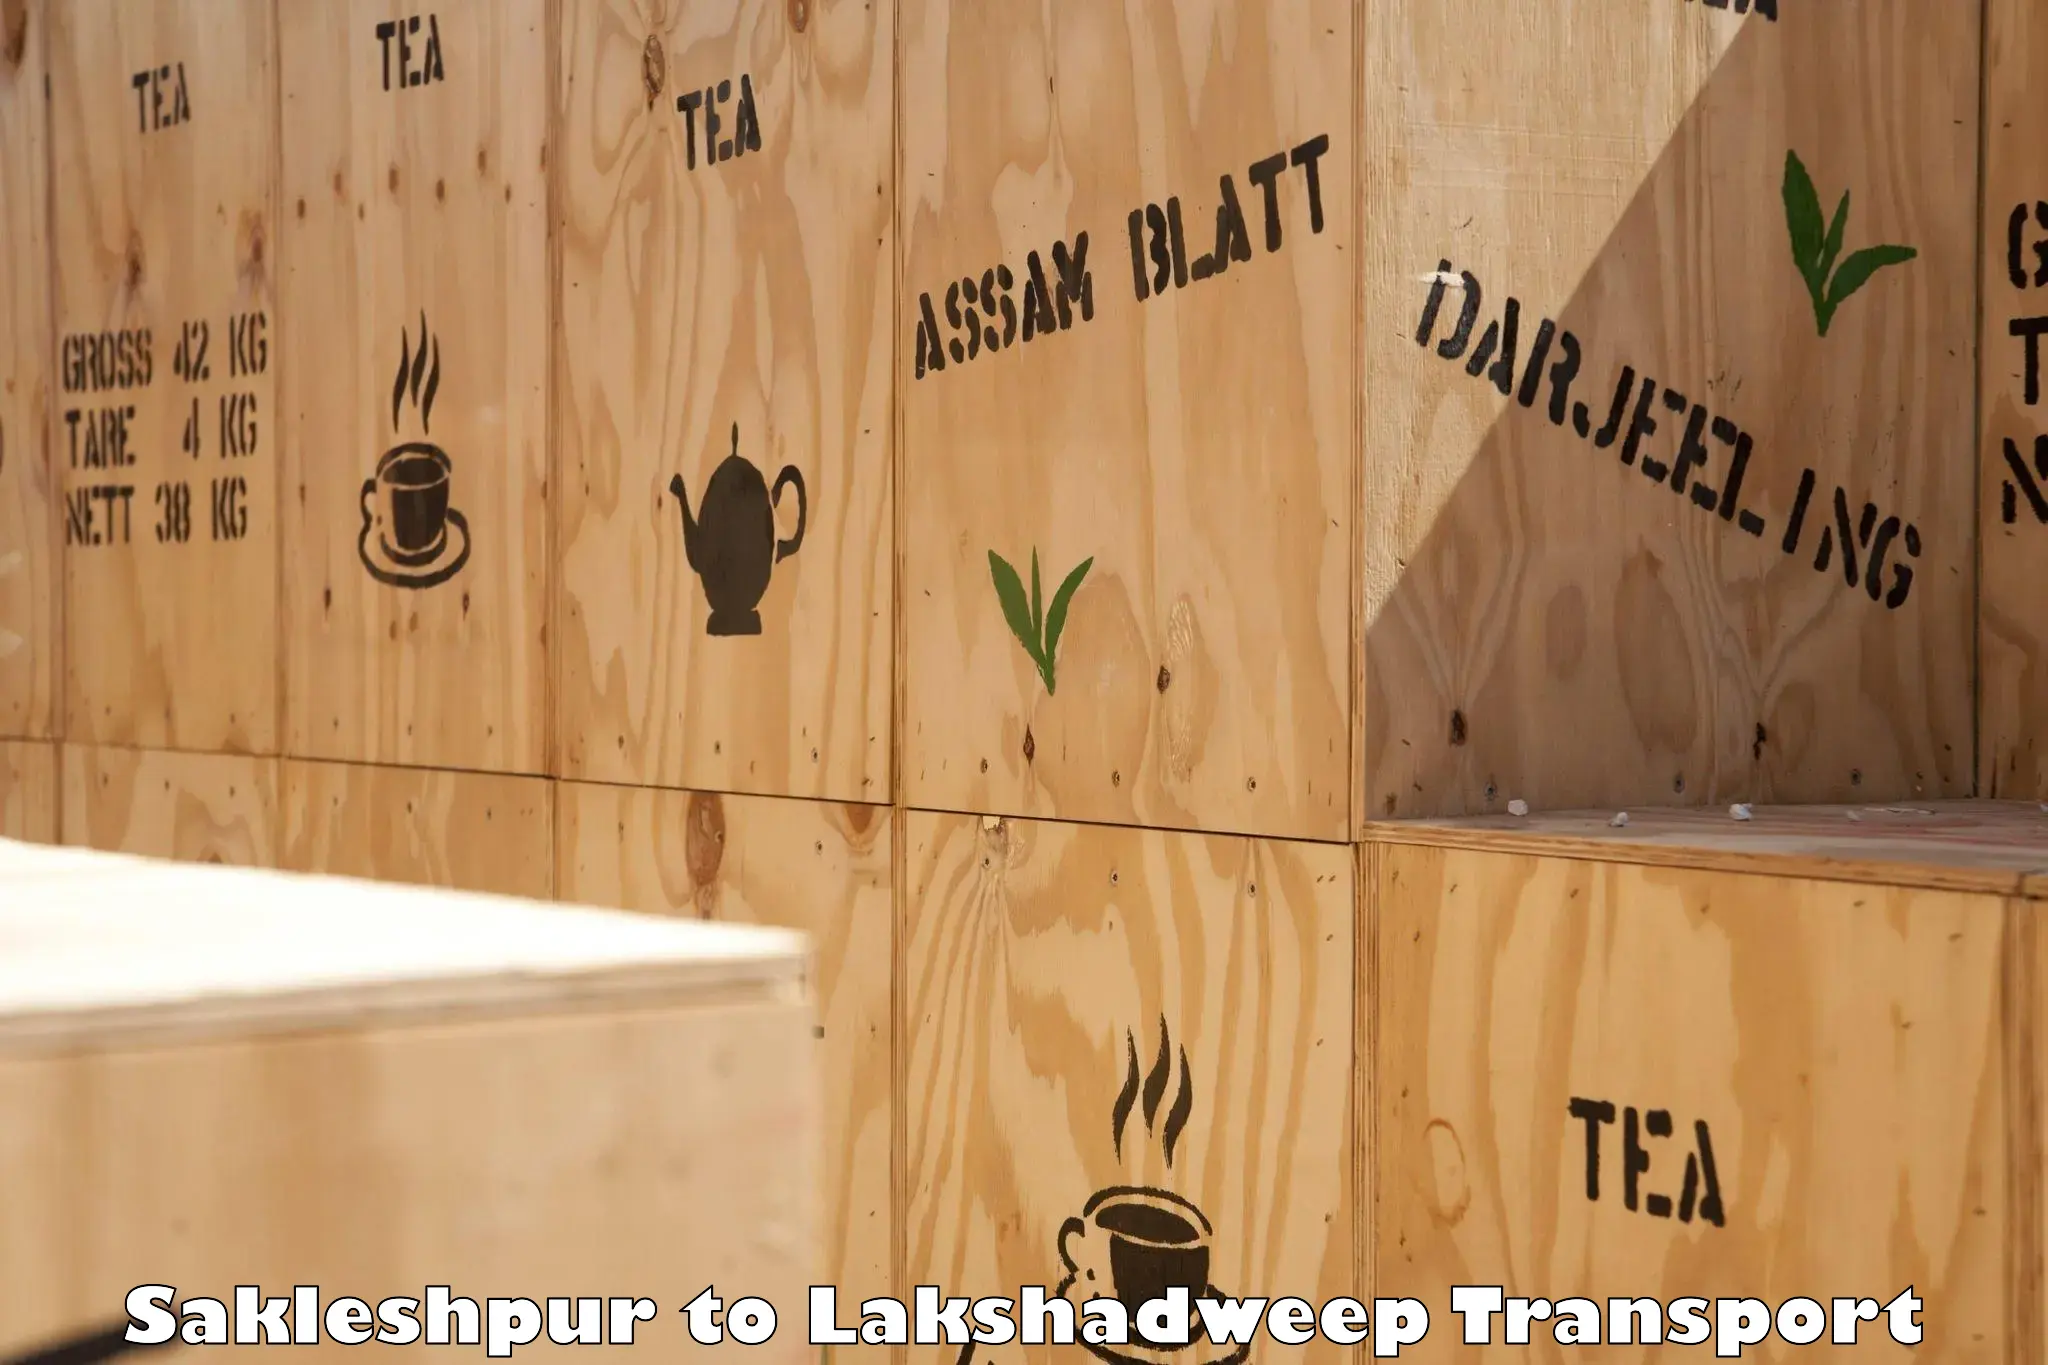 Transport in sharing Sakleshpur to Lakshadweep